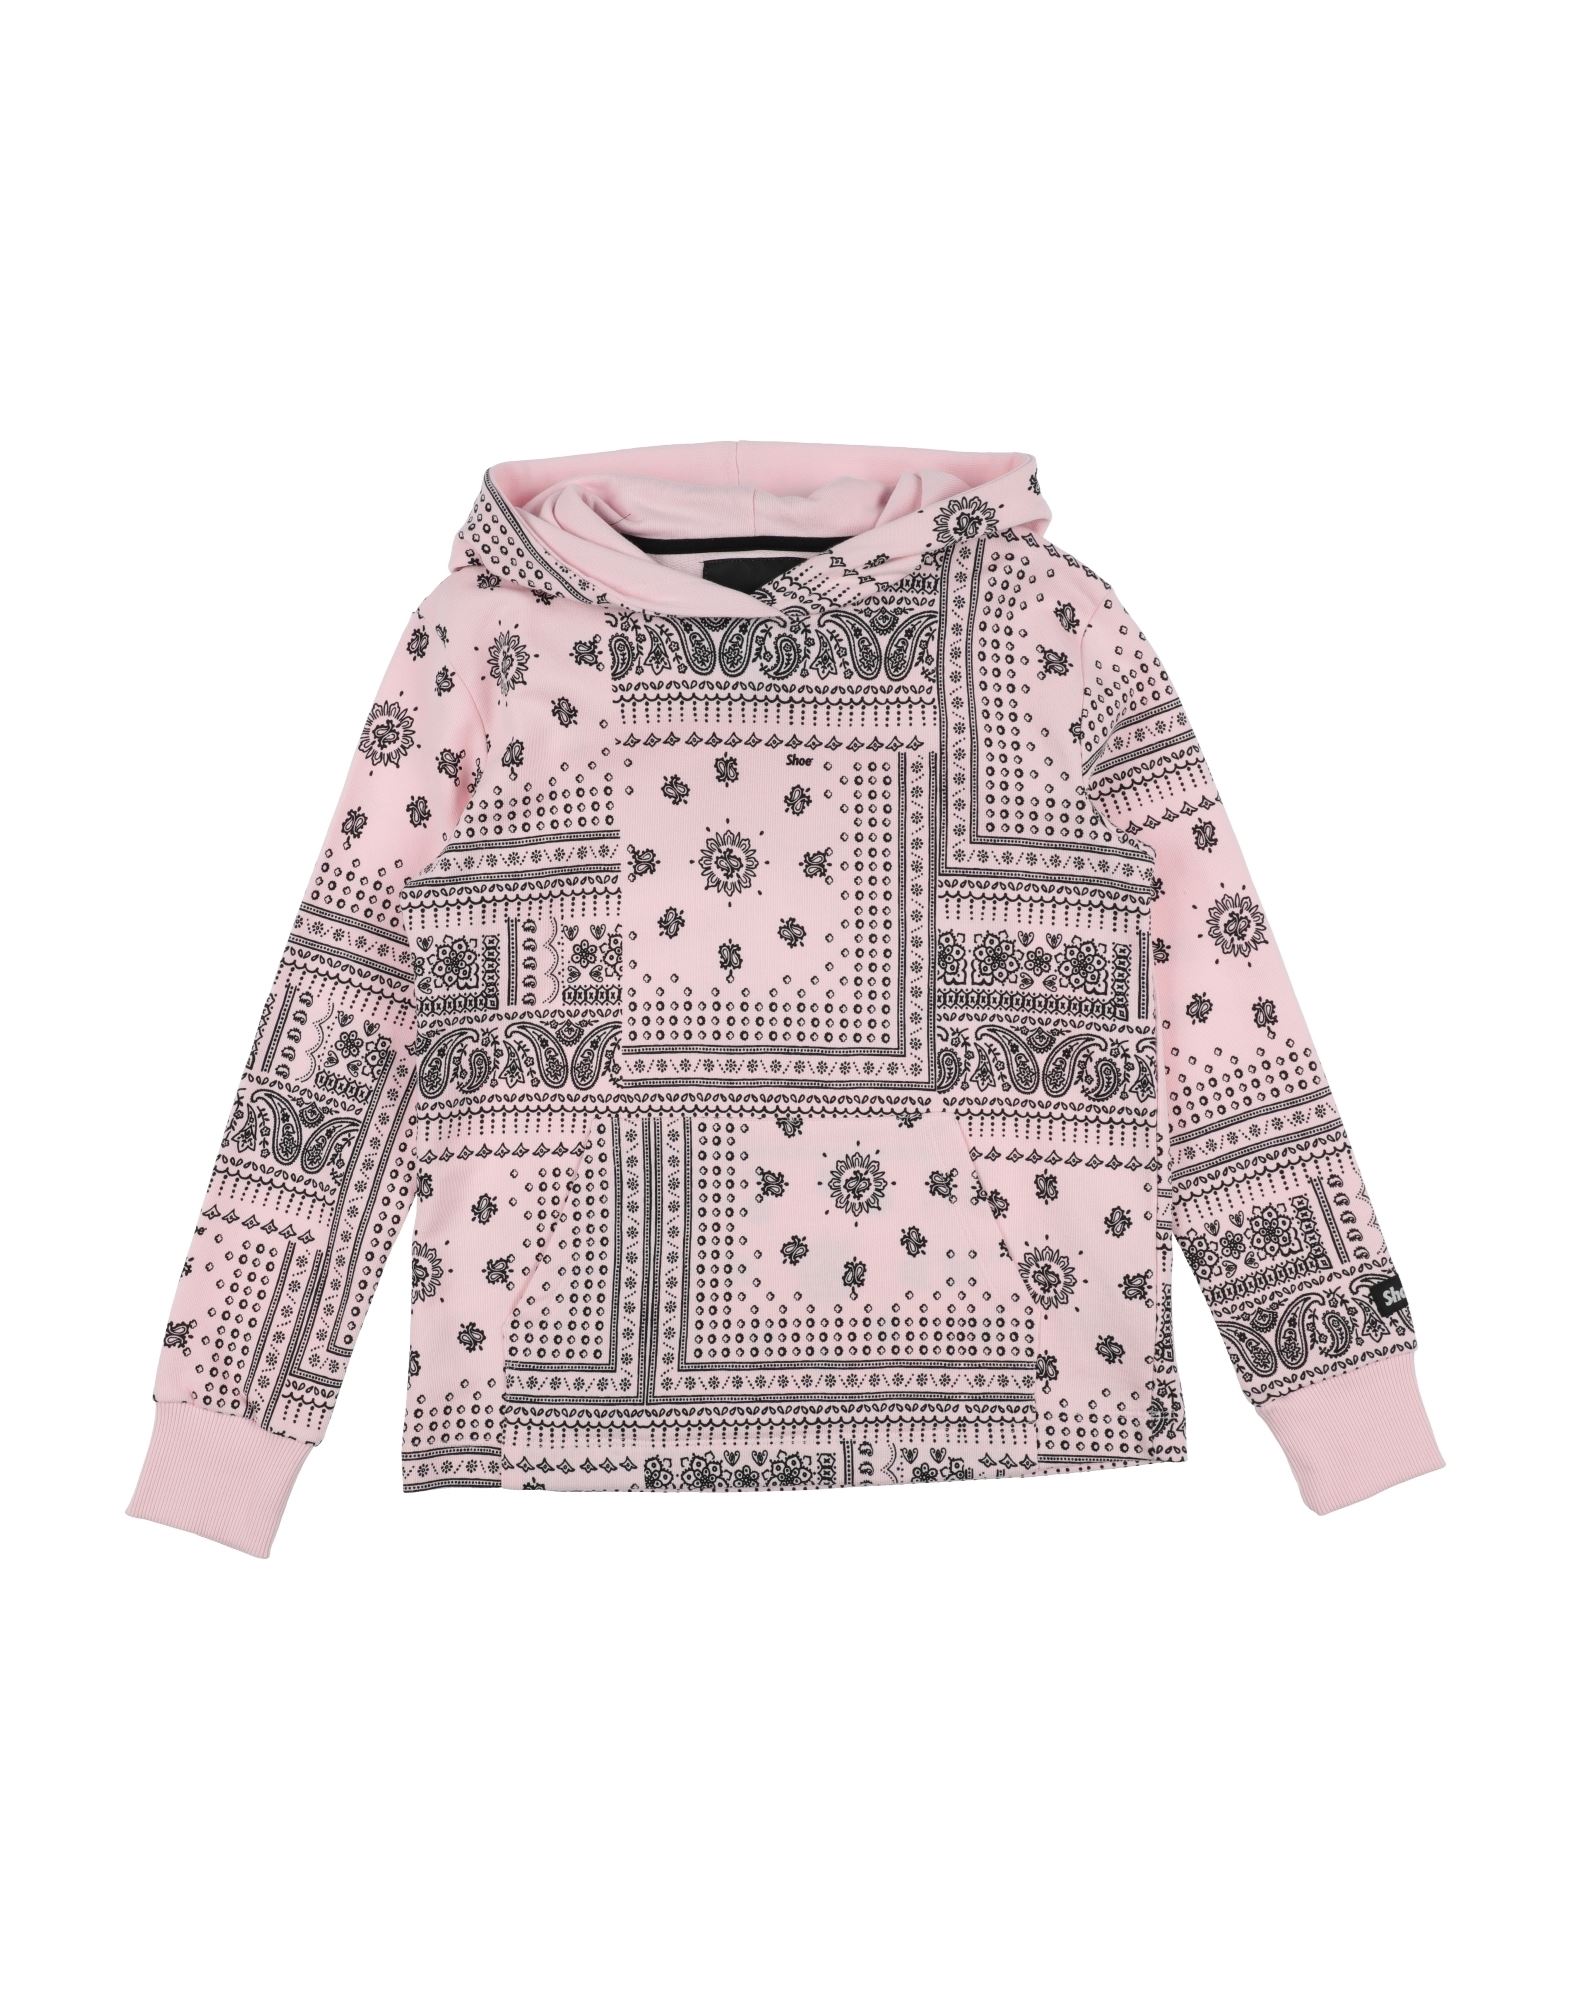 Shoe® Kids' Shoe Toddler Girl Sweatshirt Light Pink Size 4 Cotton